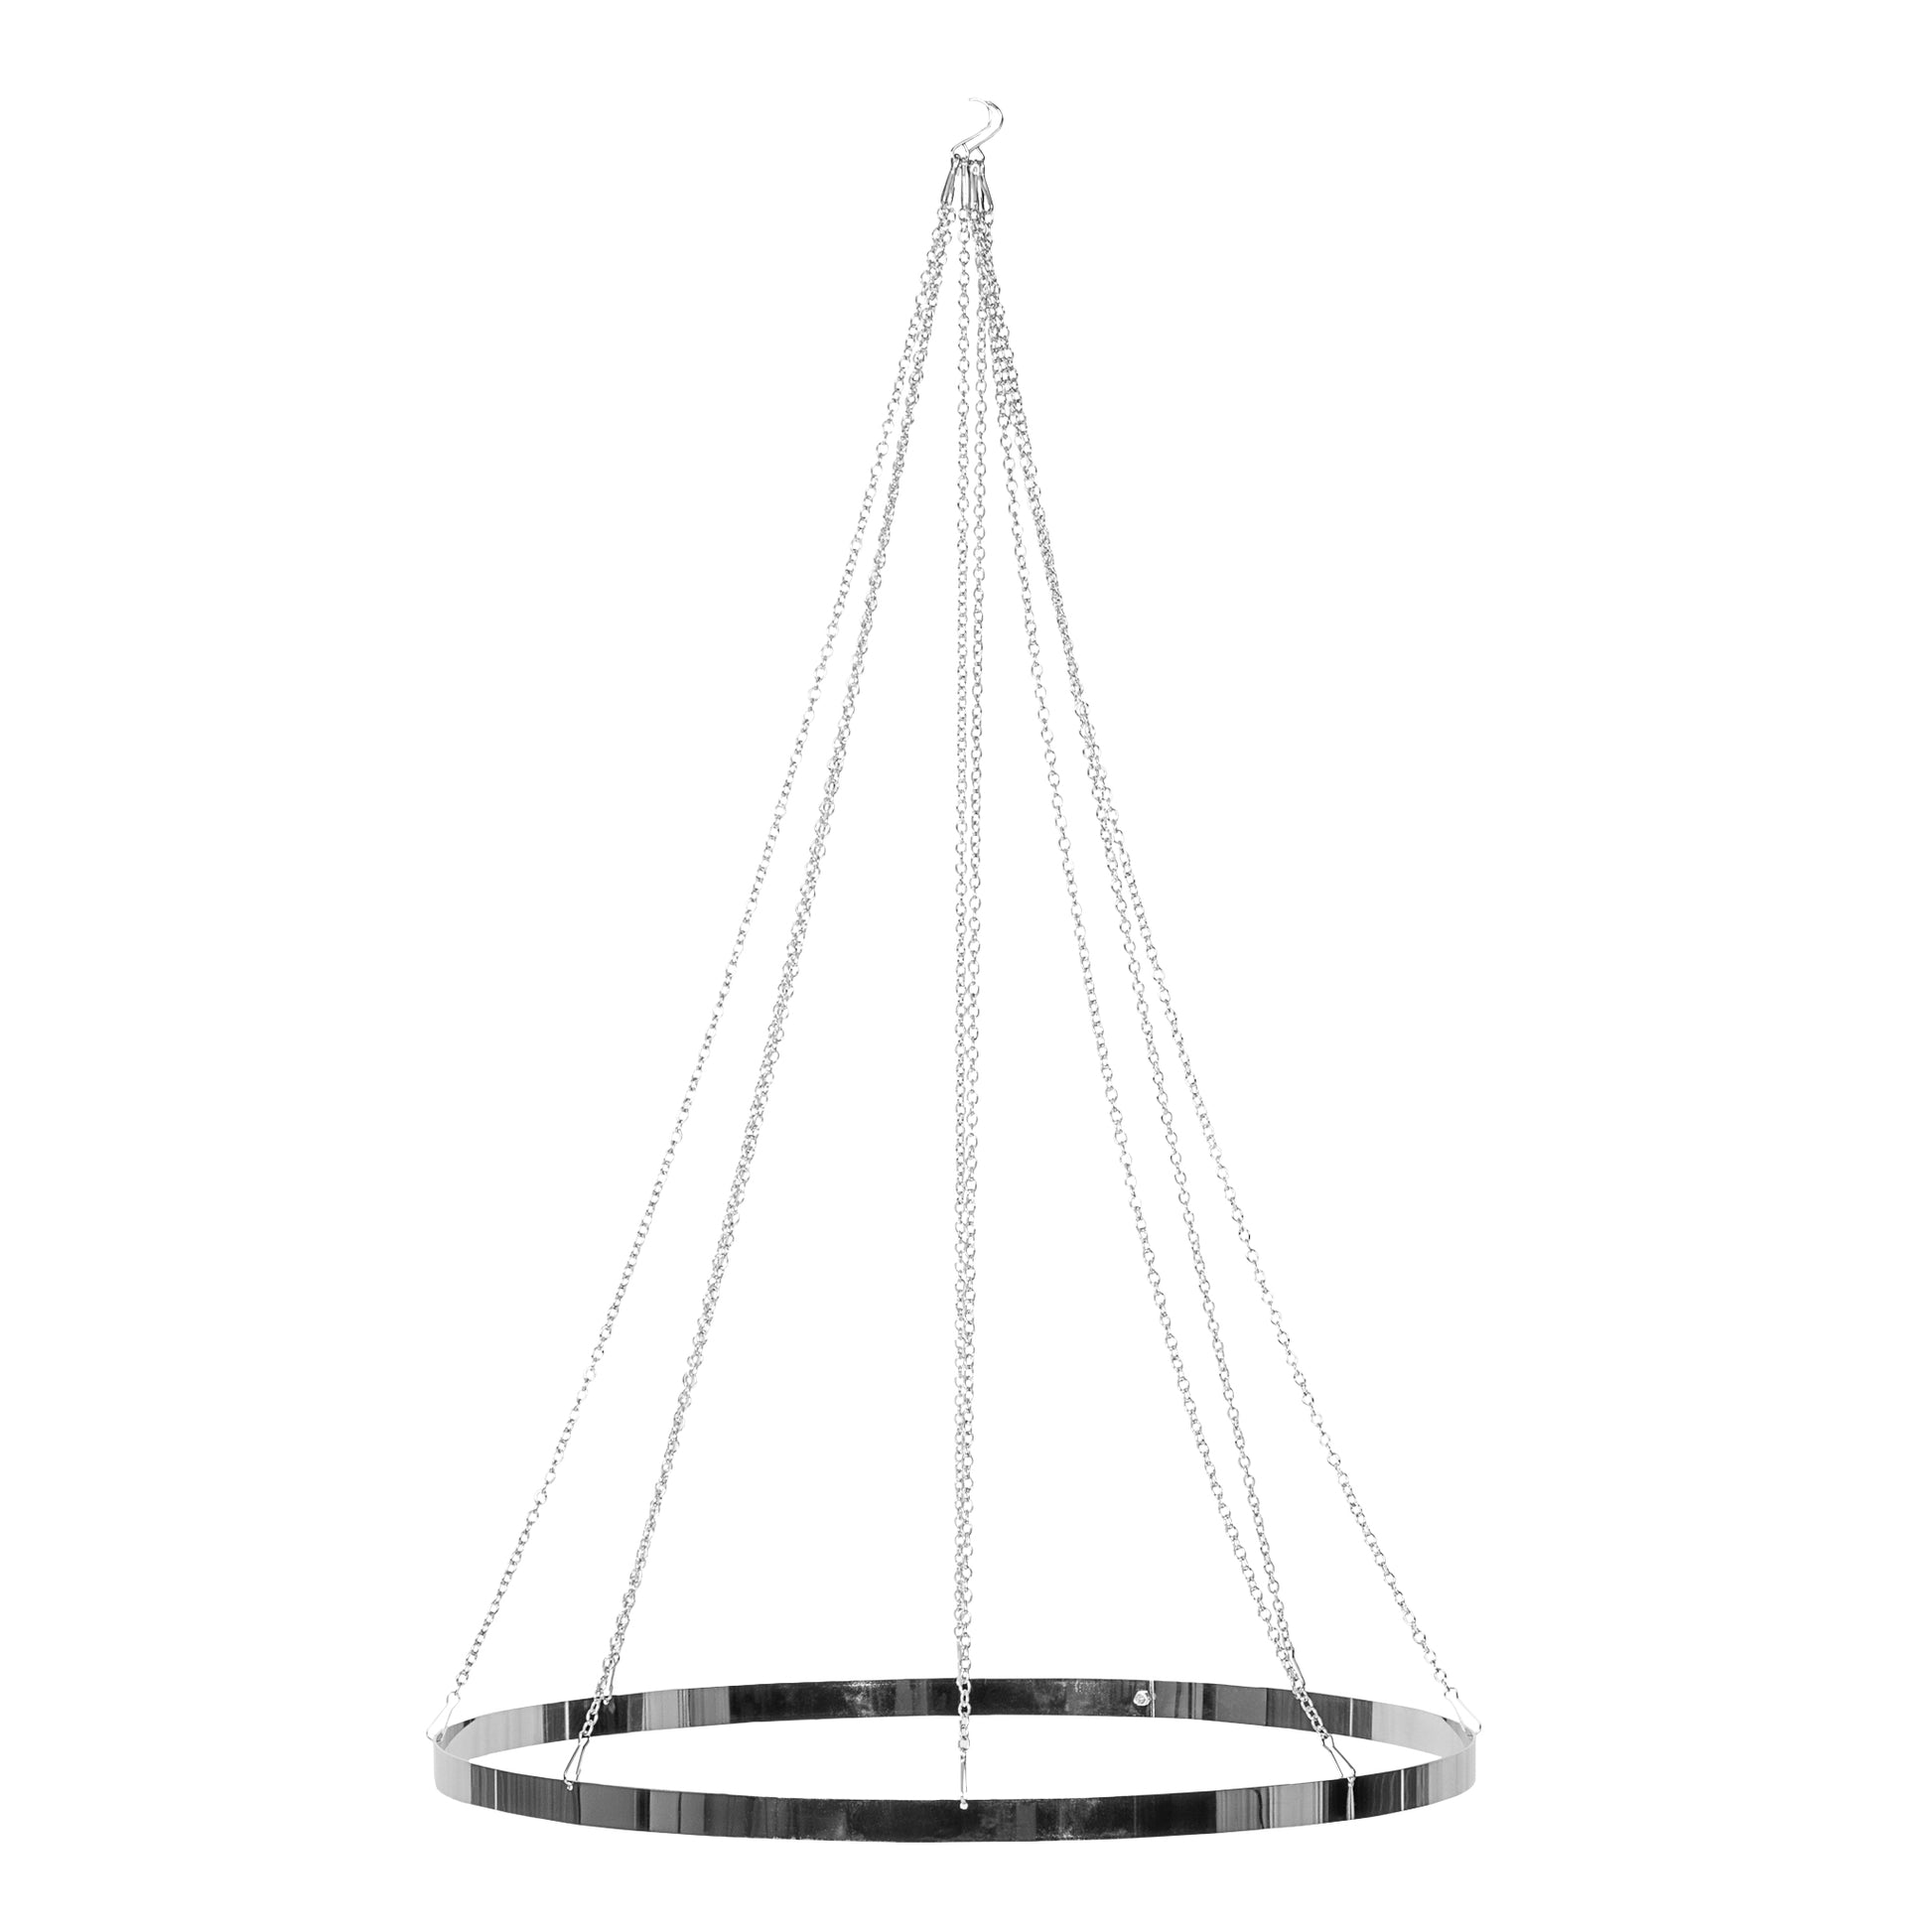 24" Hoop Ring Hardware Kit for Ceiling Draping